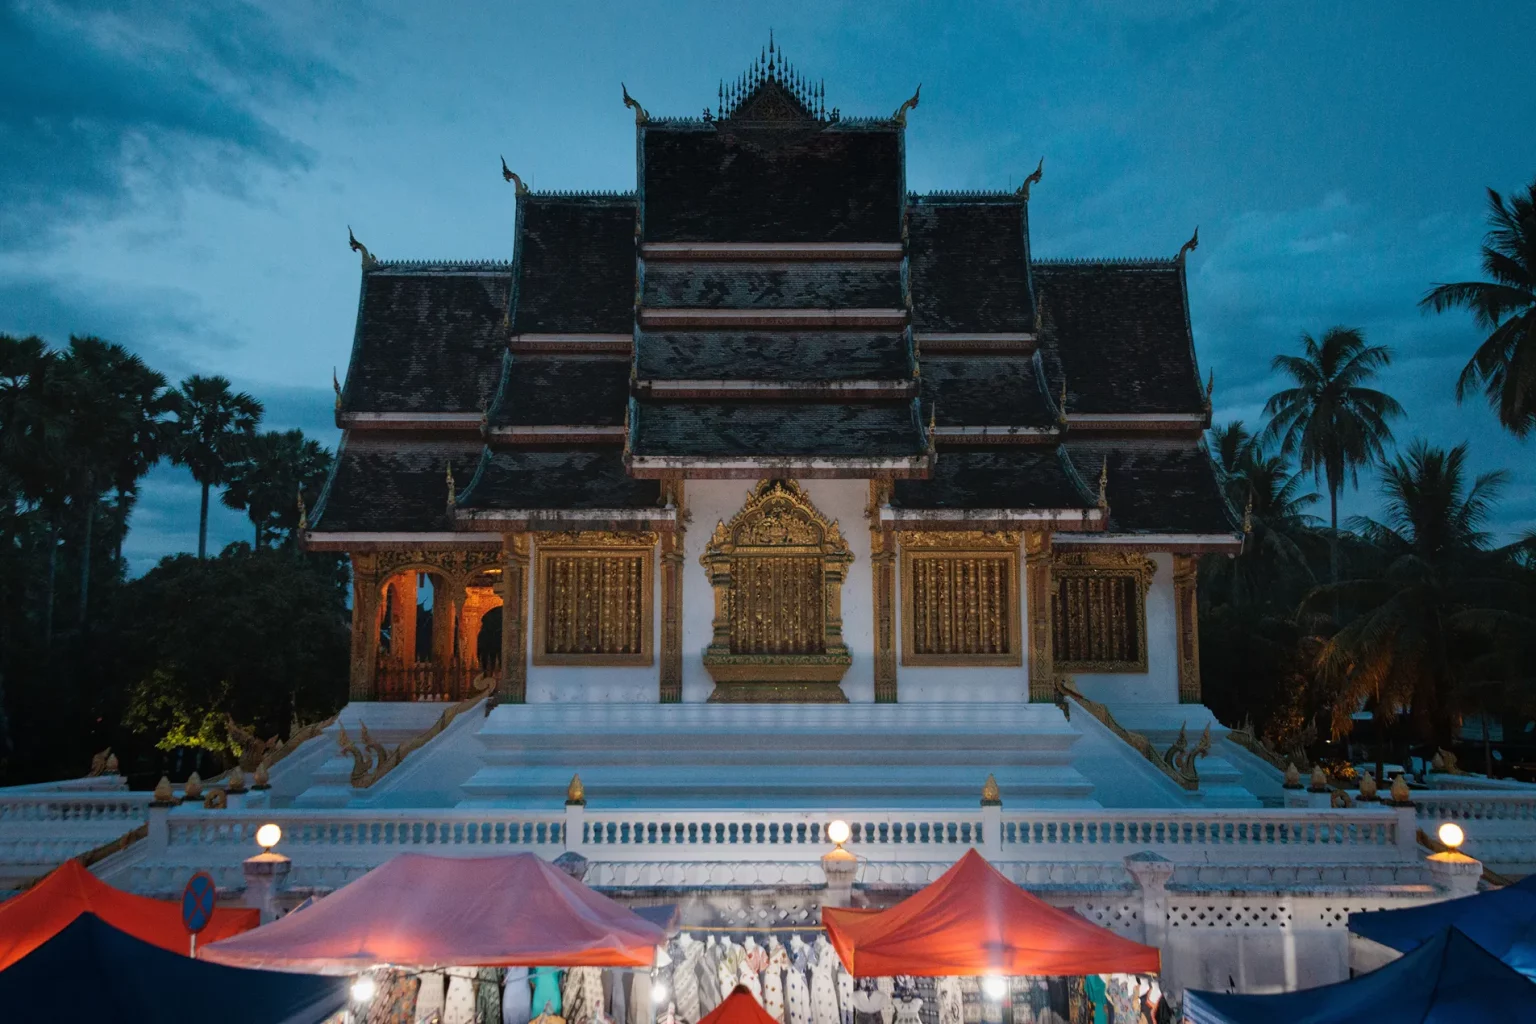 Haw Pha Bang temple at the blue hours - Luang Prabang, Laos